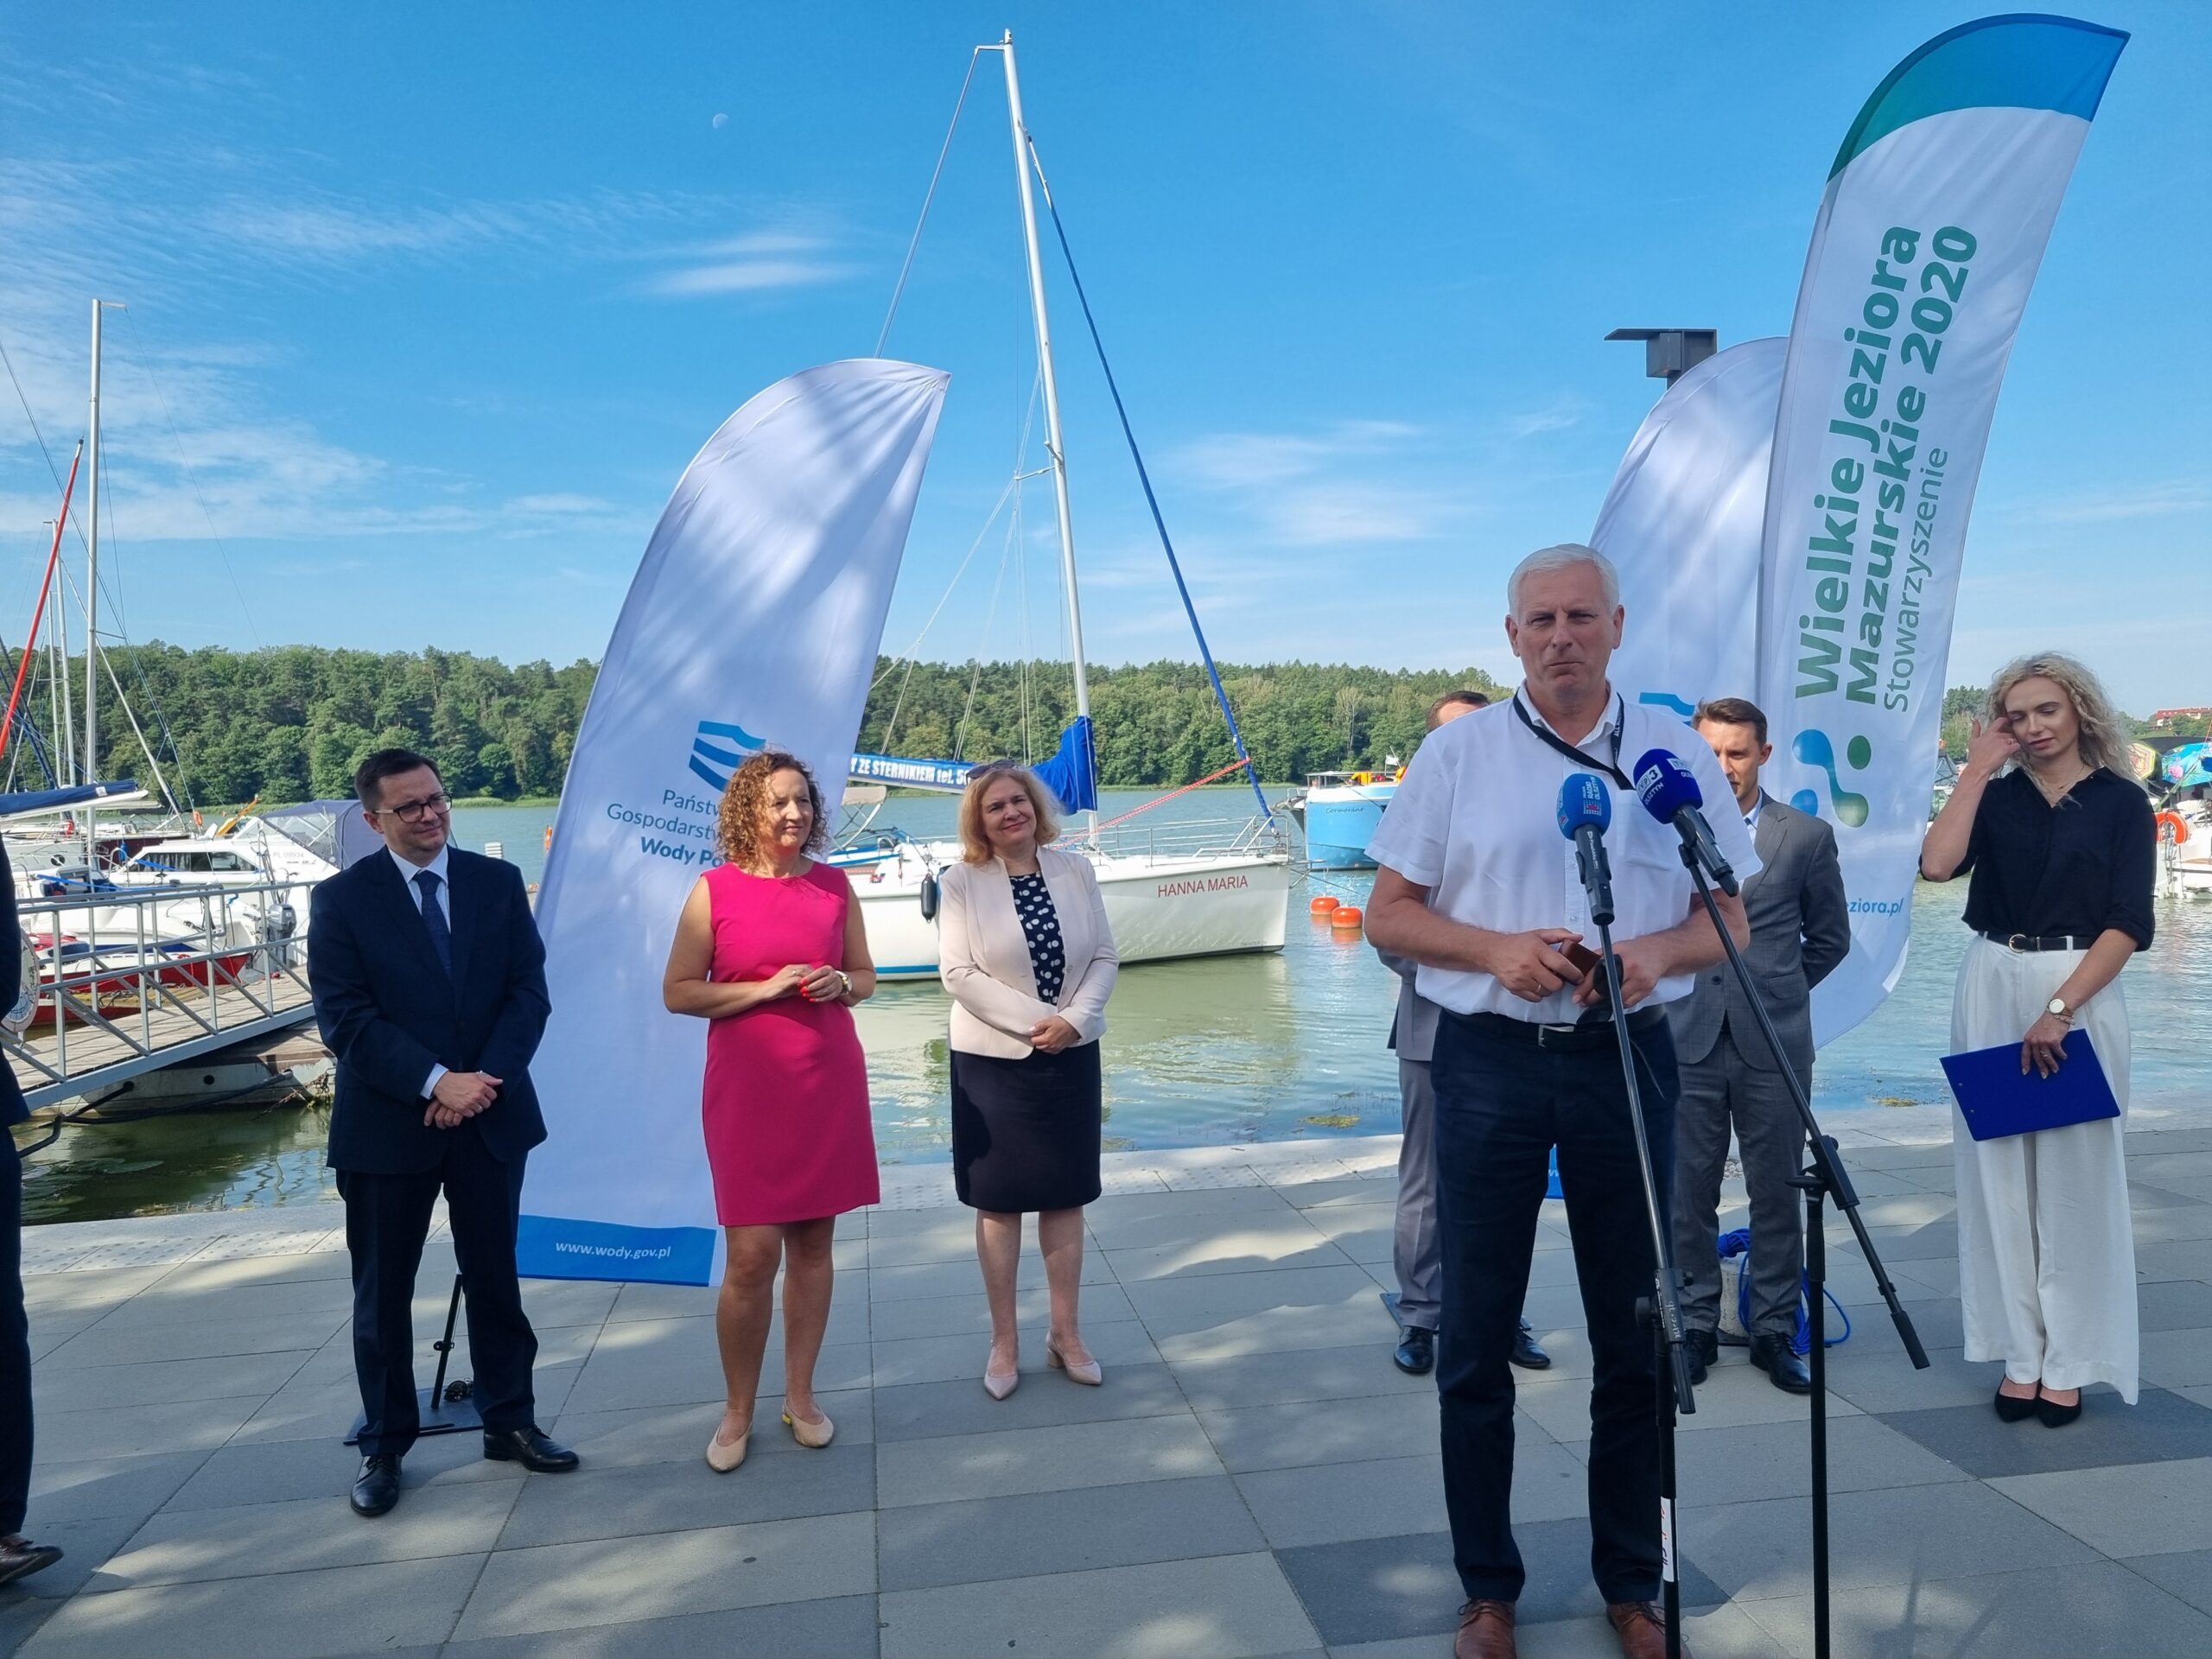 Kolejne inwestycje na mazurskich szlakach wodnych dzięki współpracy lokalnych samorządów i PGW Wody Polskie ze znaczącym wsparciem funduszy europejskich